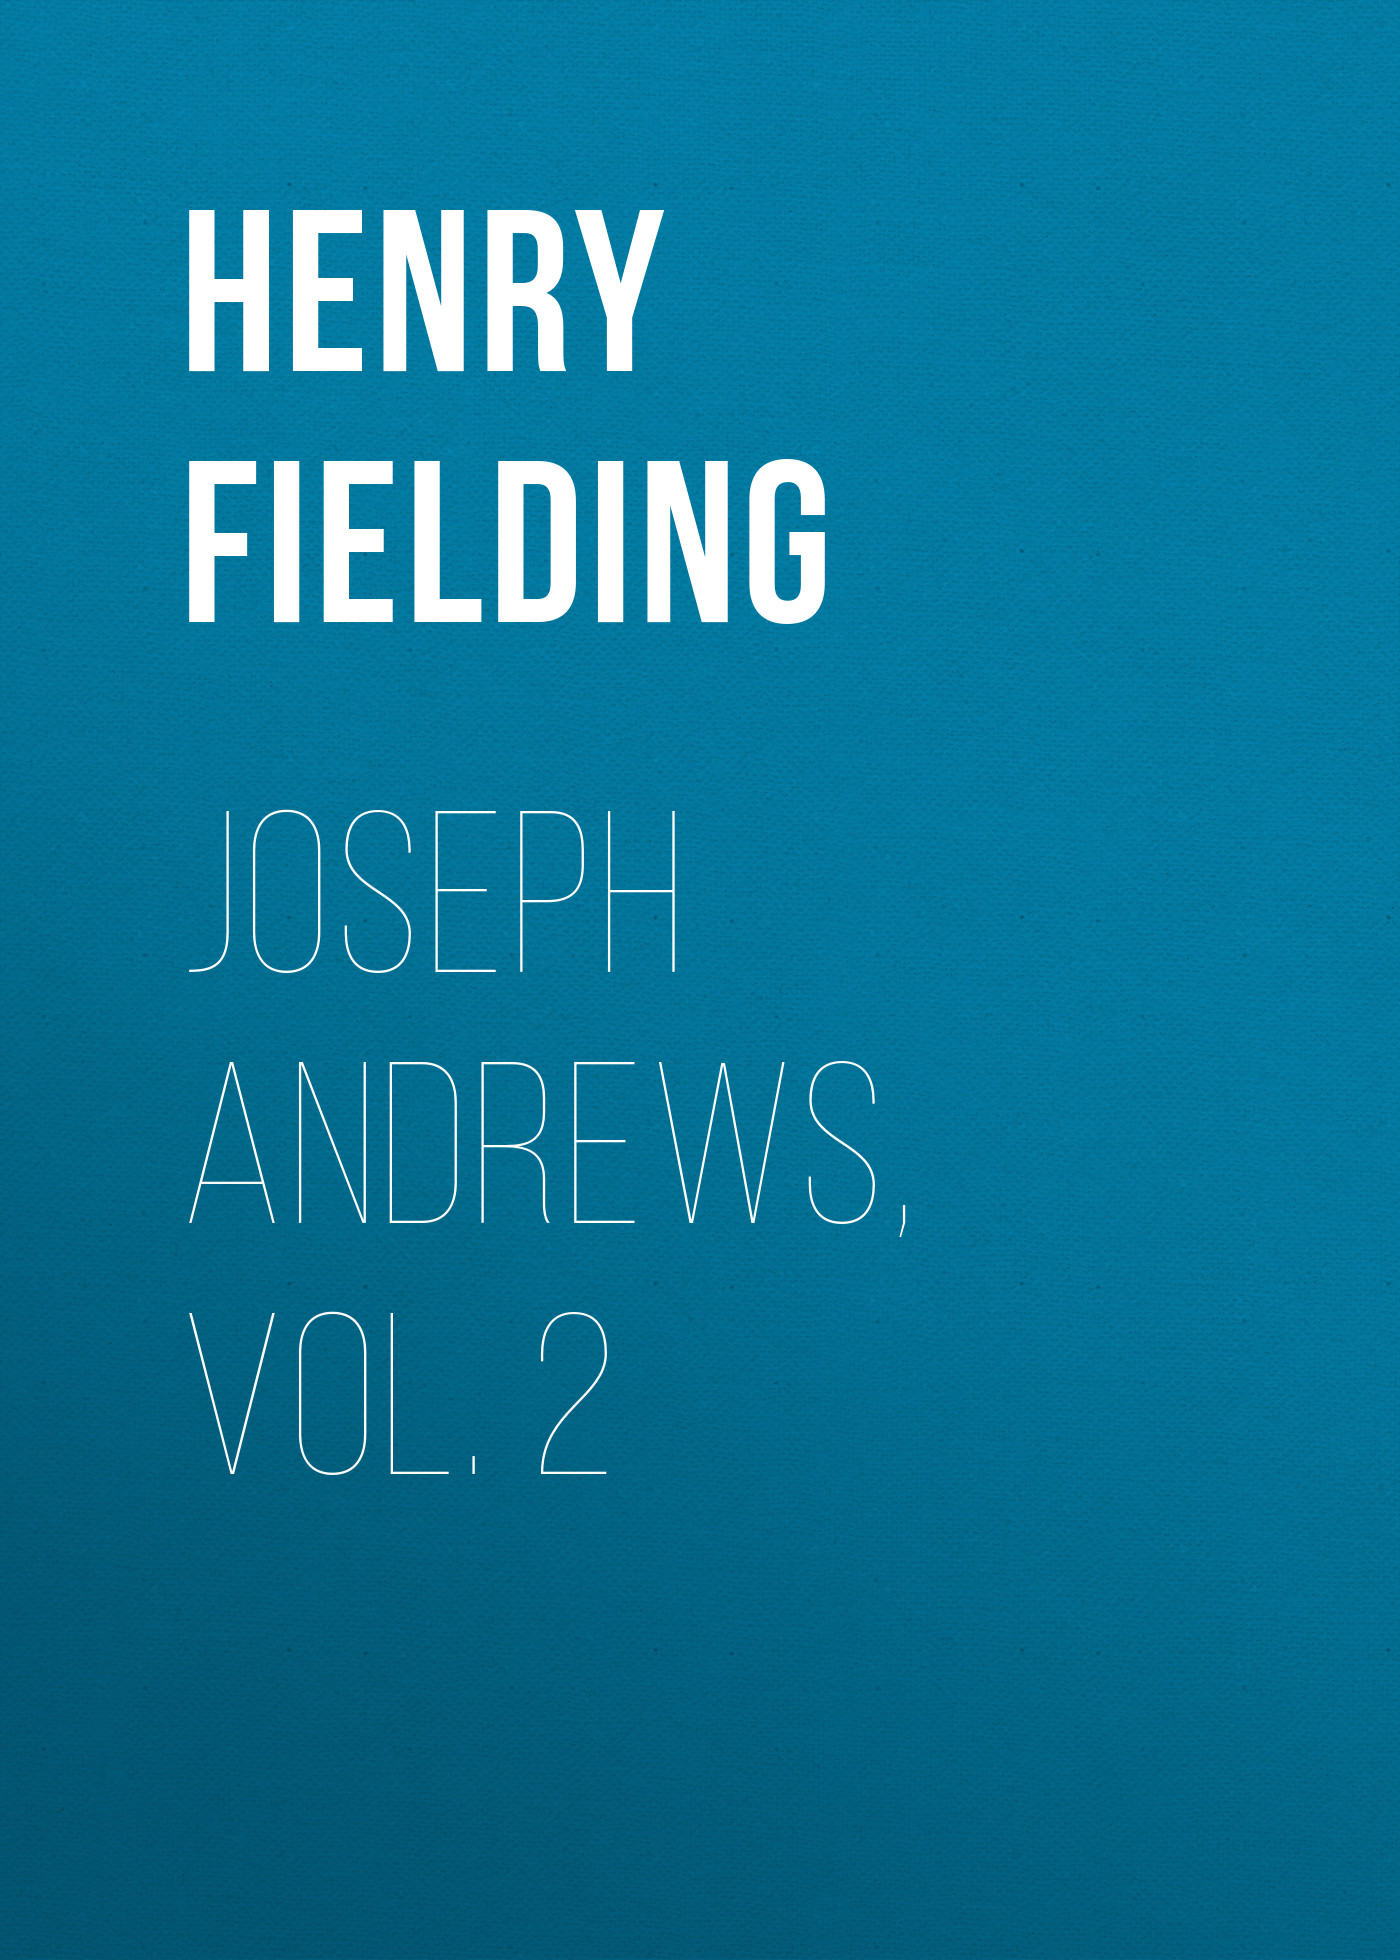 Книга Joseph Andrews, Vol. 2 из серии , созданная Henry Fielding, может относится к жанру Зарубежная классика, Зарубежная старинная литература, Зарубежный юмор. Стоимость электронной книги Joseph Andrews, Vol. 2 с идентификатором 25203391 составляет 0 руб.